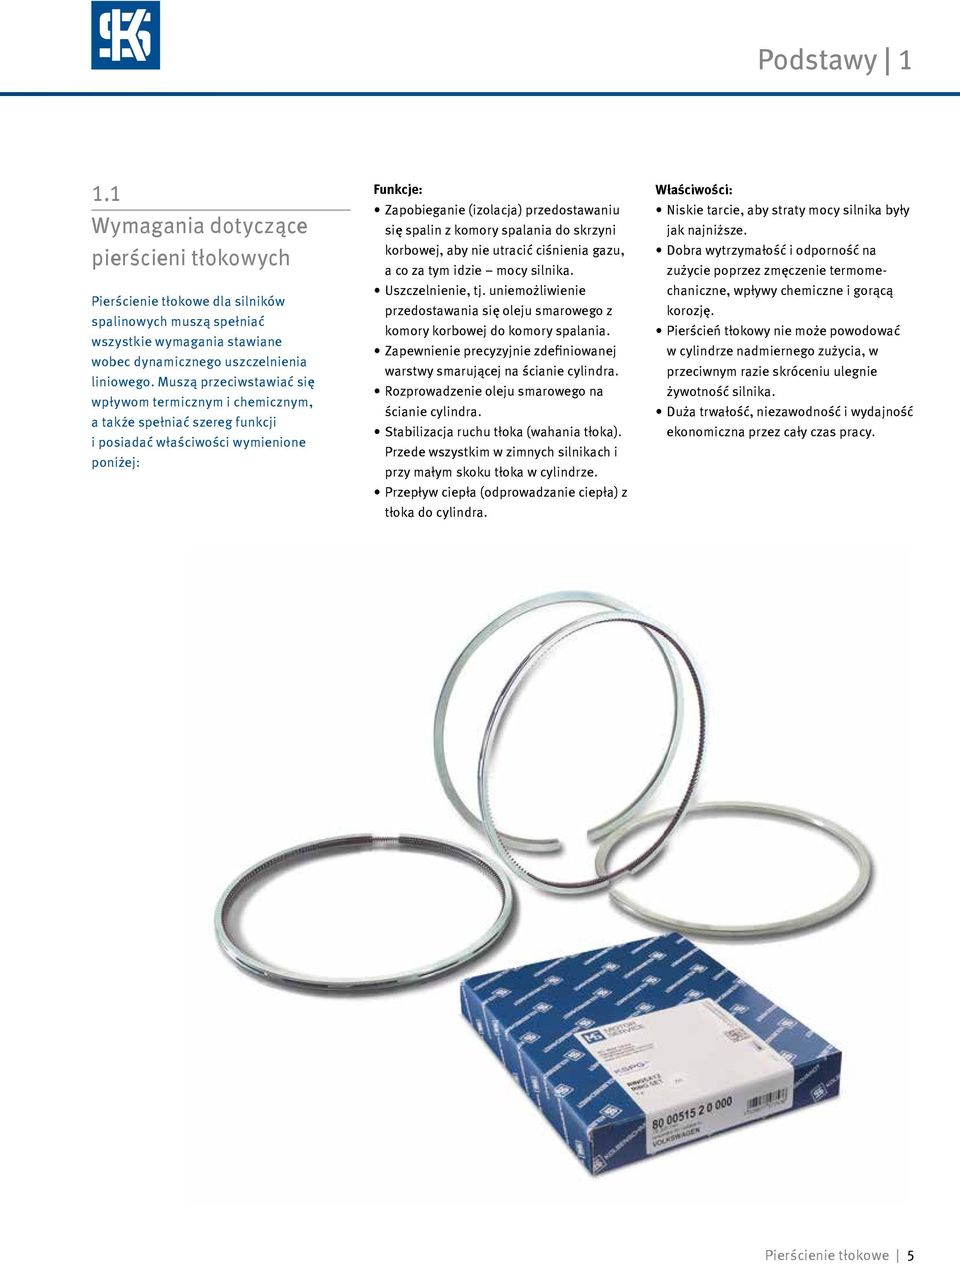 Pierścienie tłokowe do silników spalinowych - PDF Free Download